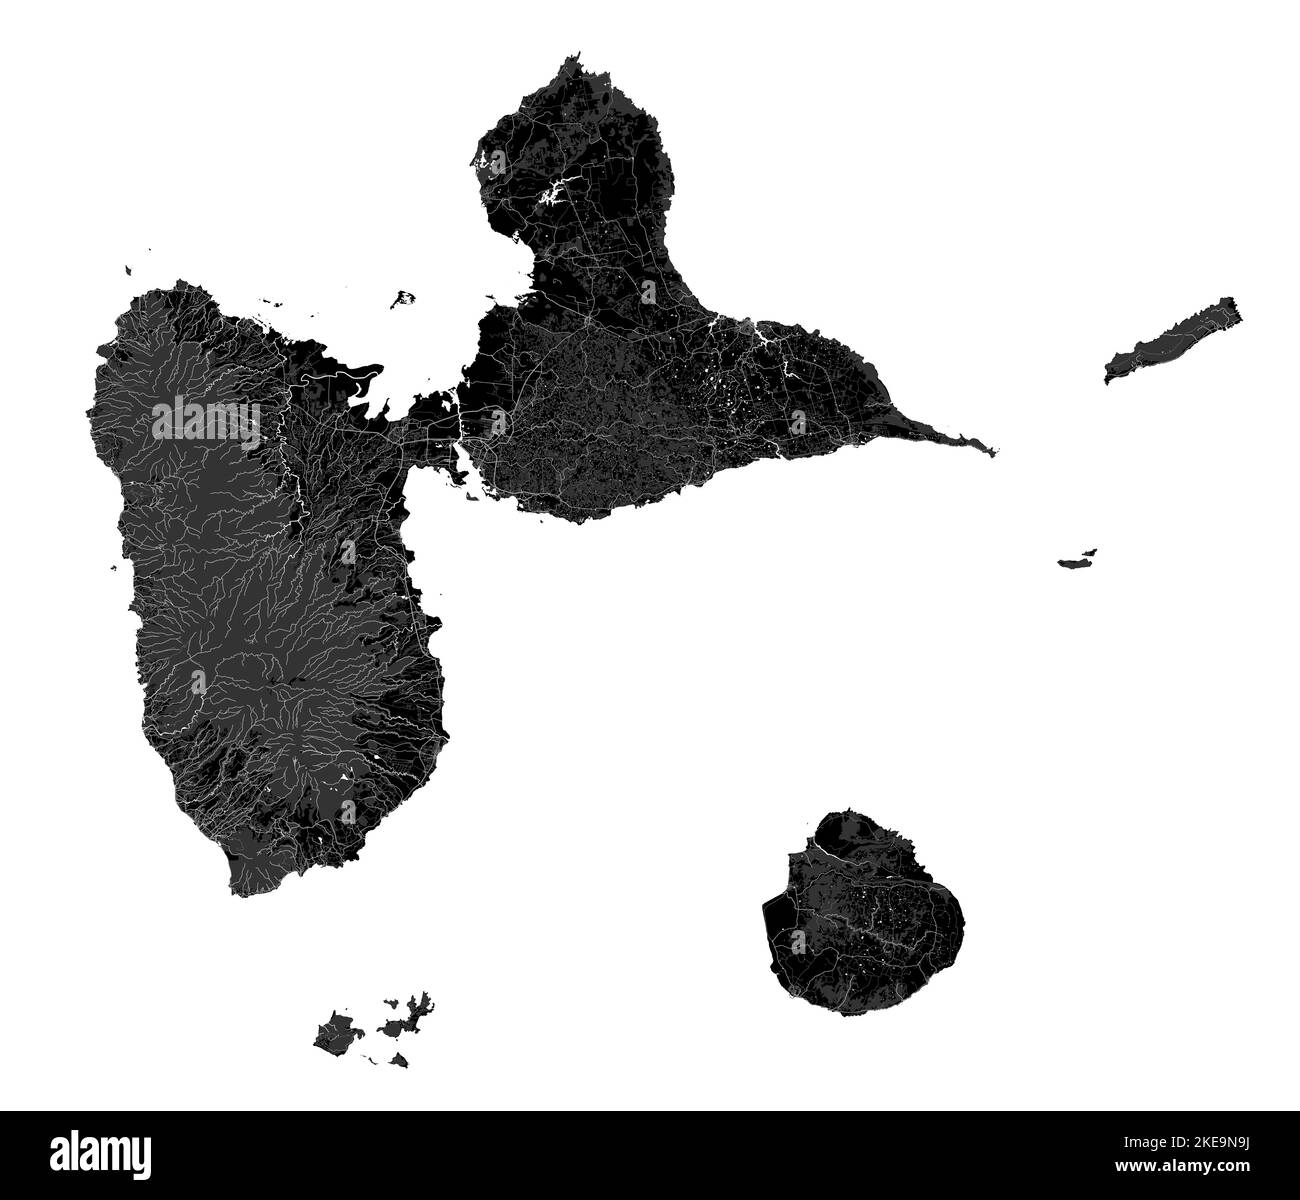 Guadeloupe mappa, isole caraibiche. Arcipelago e dipartimento d'oltremare e regione della Francia. Mappa nera scura con fiumi, foreste, sfondo bianco. Illustrazione Vettoriale